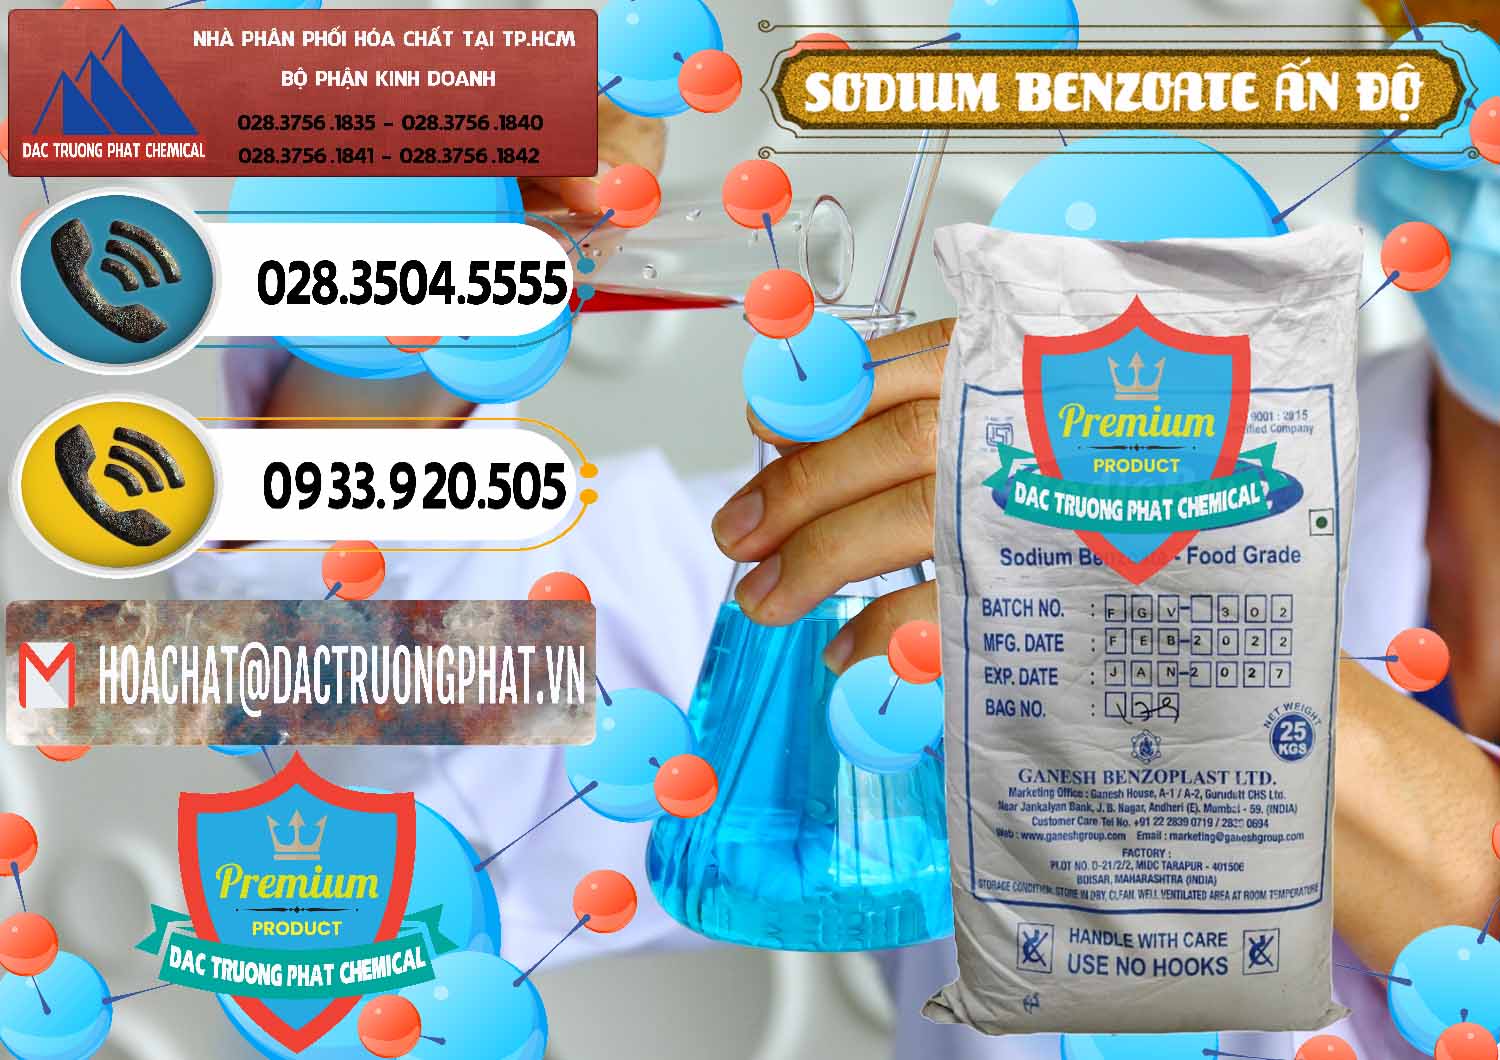 Cty chuyên cung cấp & bán Sodium Benzoate - Mốc Bột Ấn Độ India - 0361 - Công ty chuyên cung cấp _ bán hóa chất tại TP.HCM - hoachatdetnhuom.vn